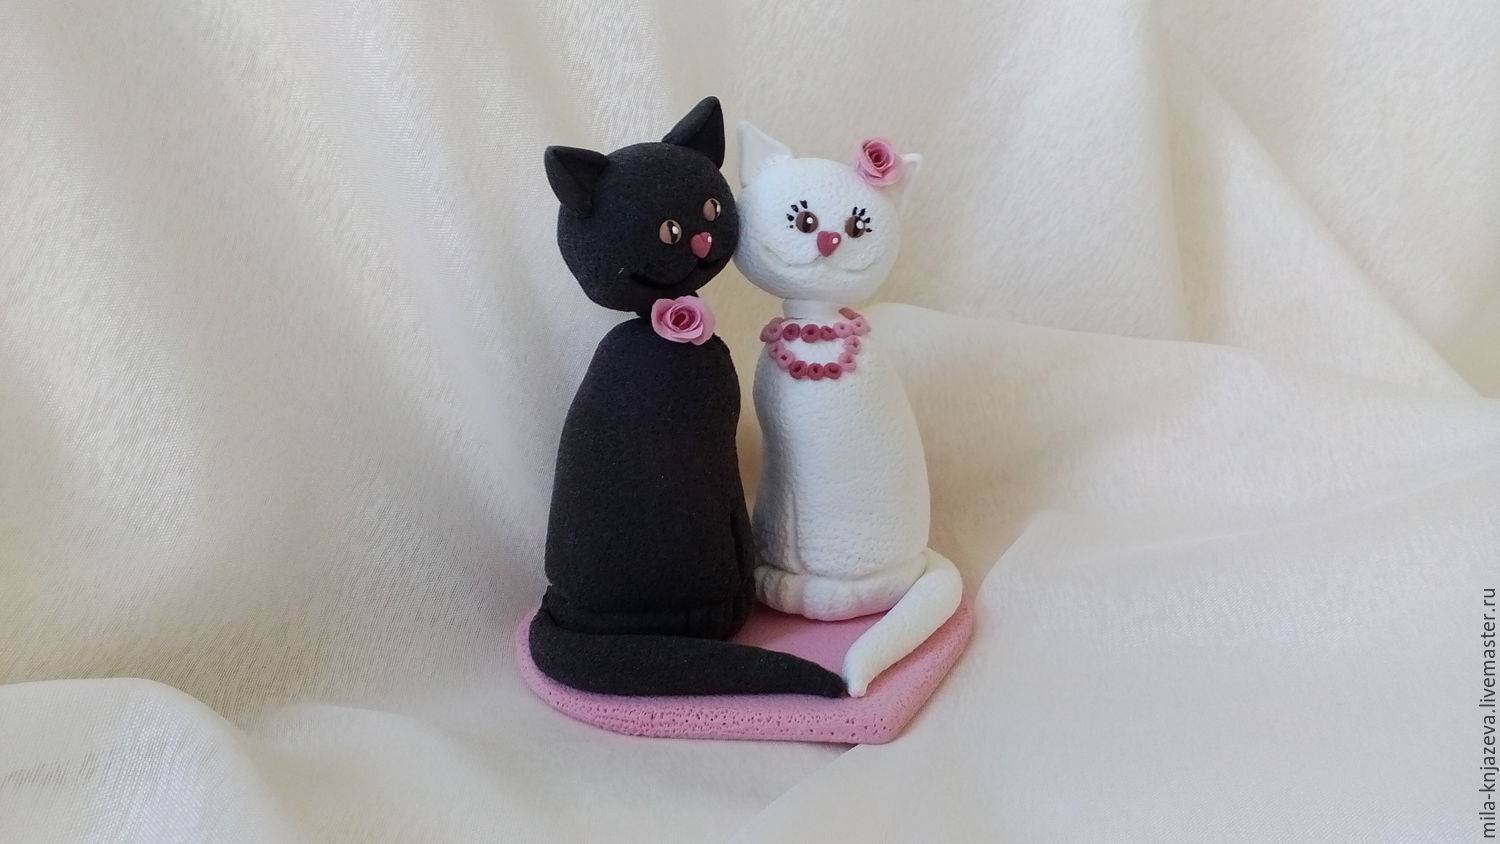 Свадебные коты: дневник группы «куклы тильды и другие примитивные игрушки»: группы - женская социальная сеть myjulia.ru